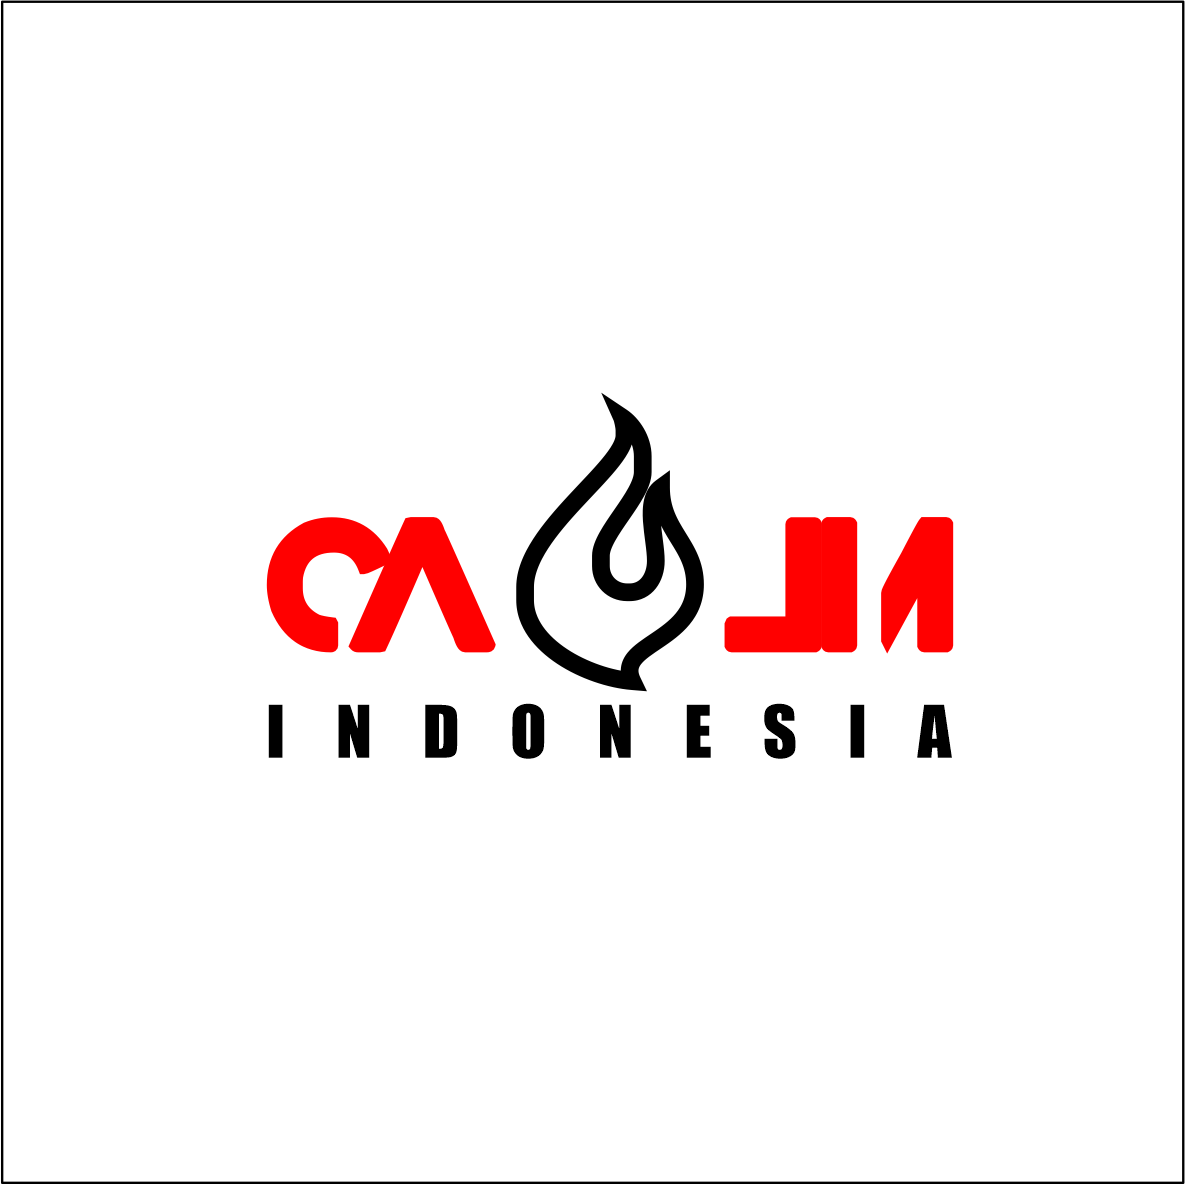 CALM Indonesia